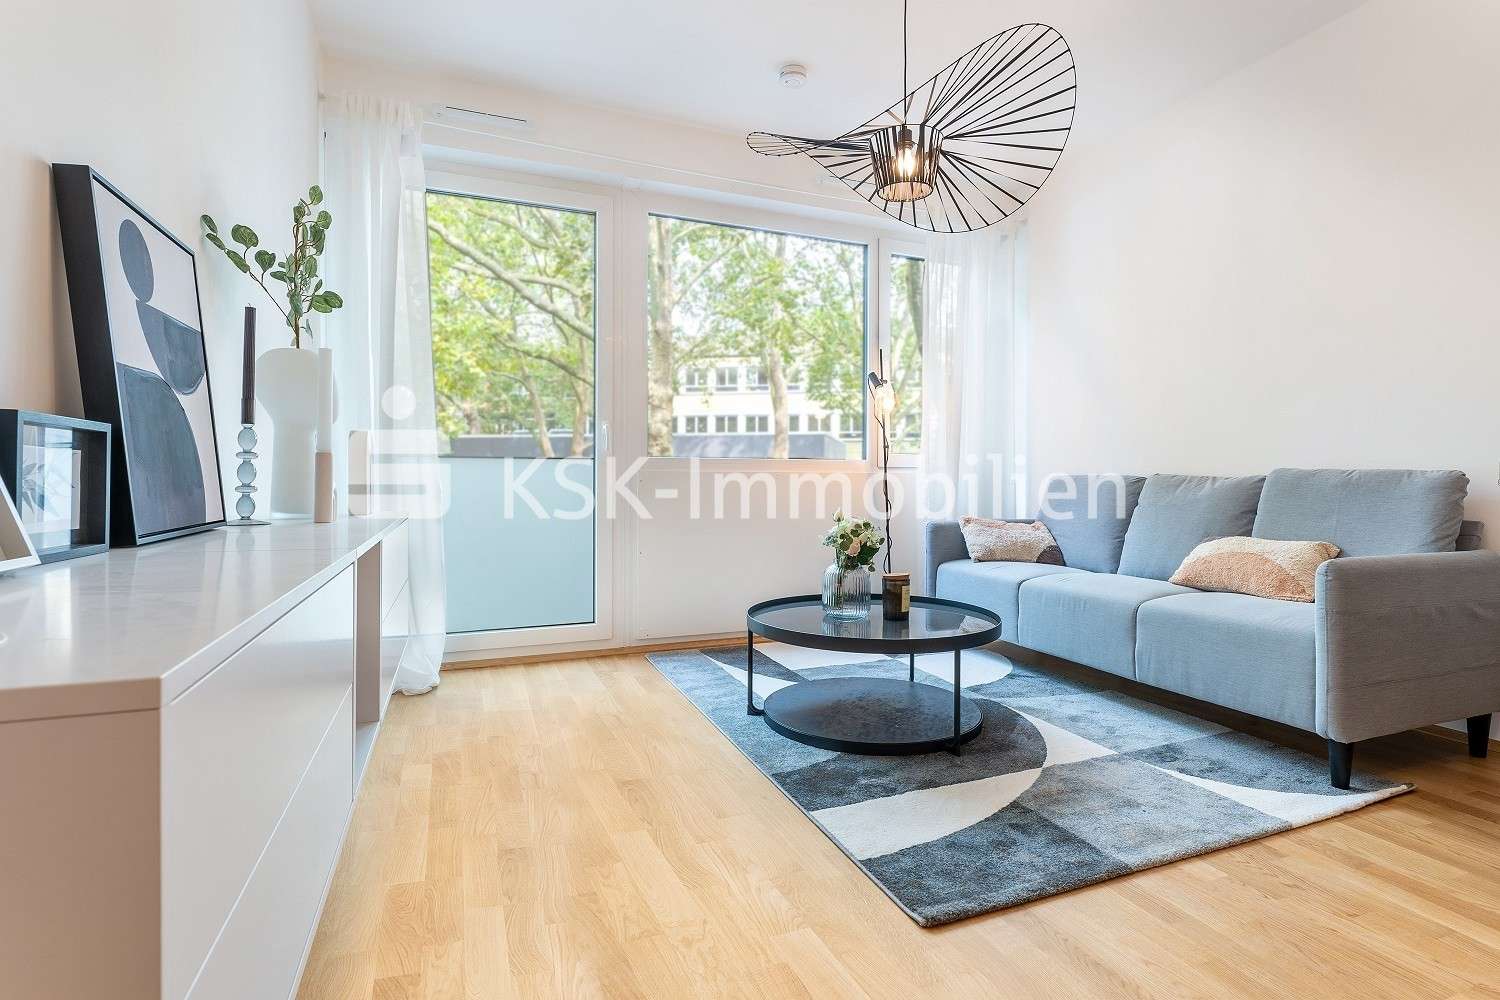 Wohnbereich - Etagenwohnung in 50676 Köln mit 45m² kaufen